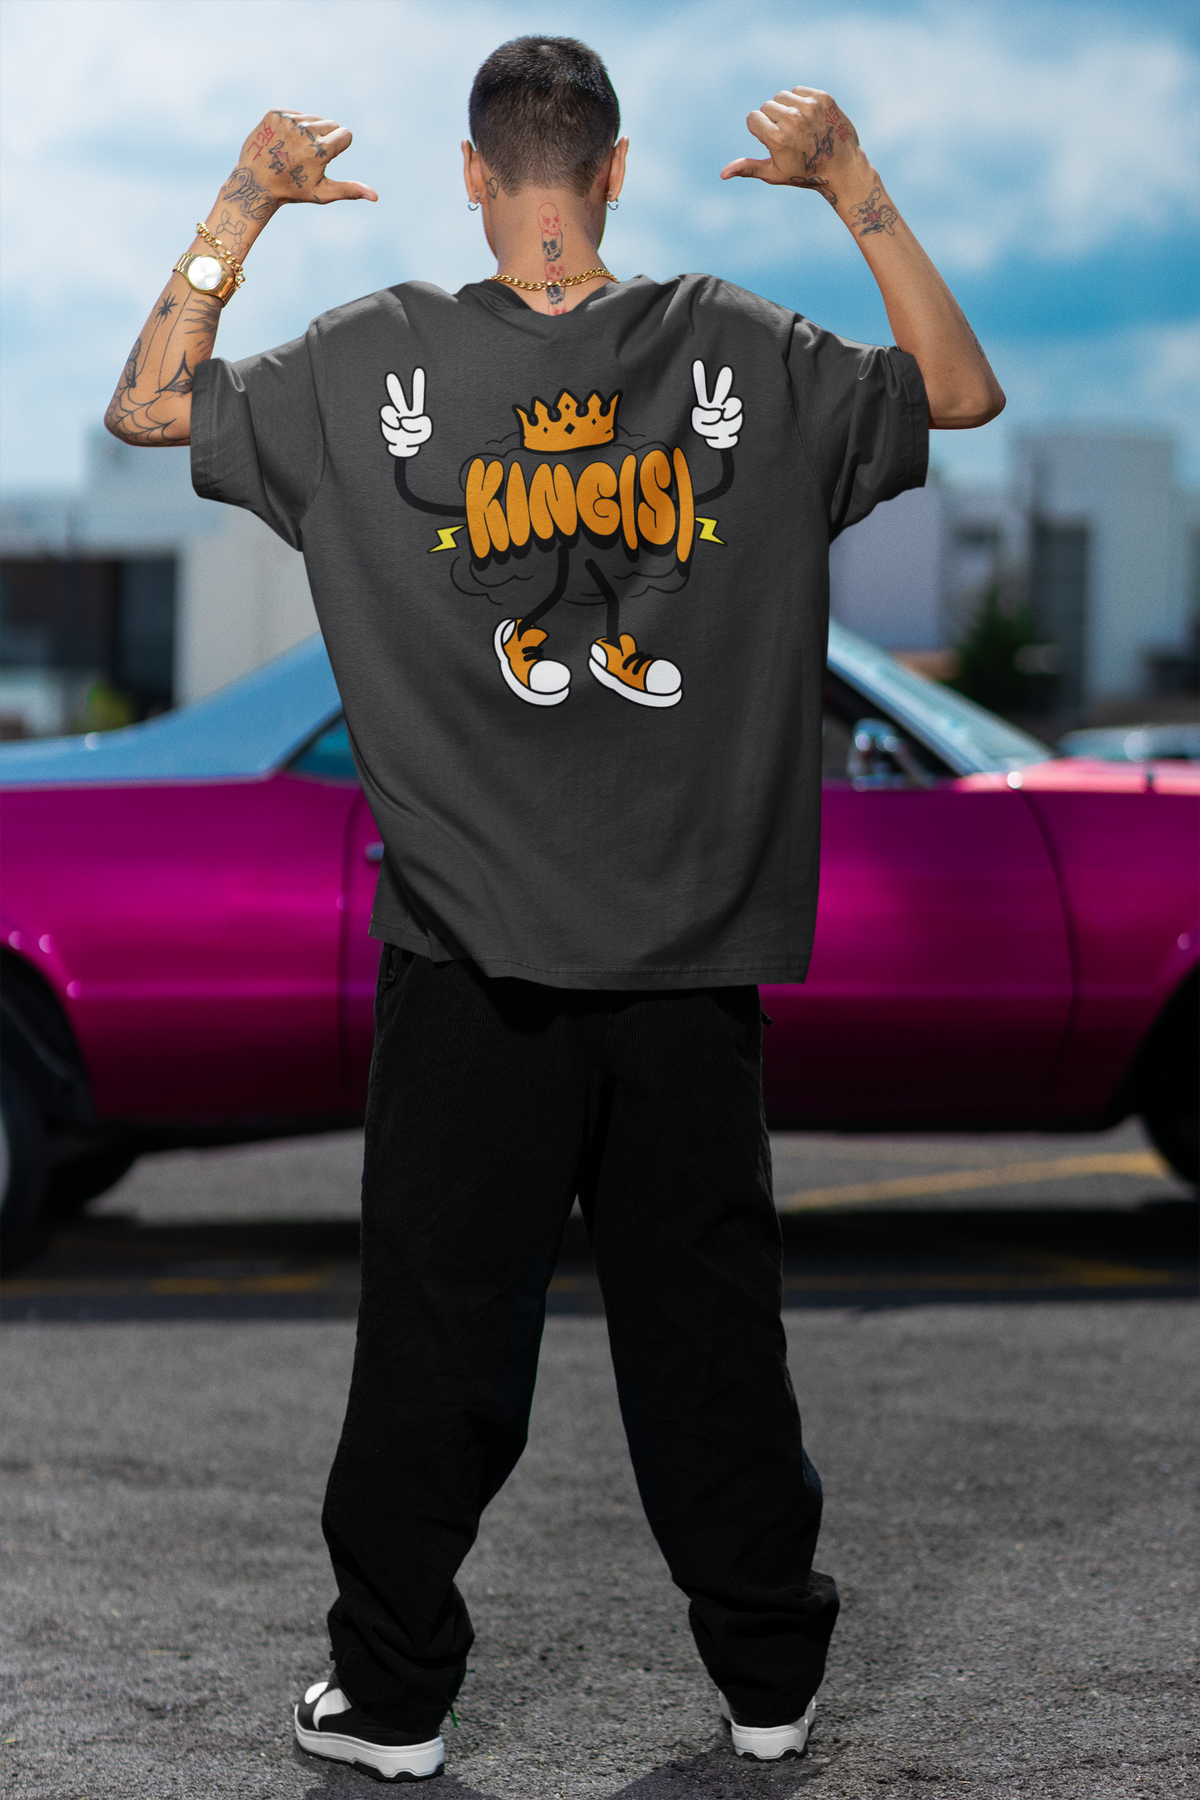 DanielEden limited oversized " KingsDay "